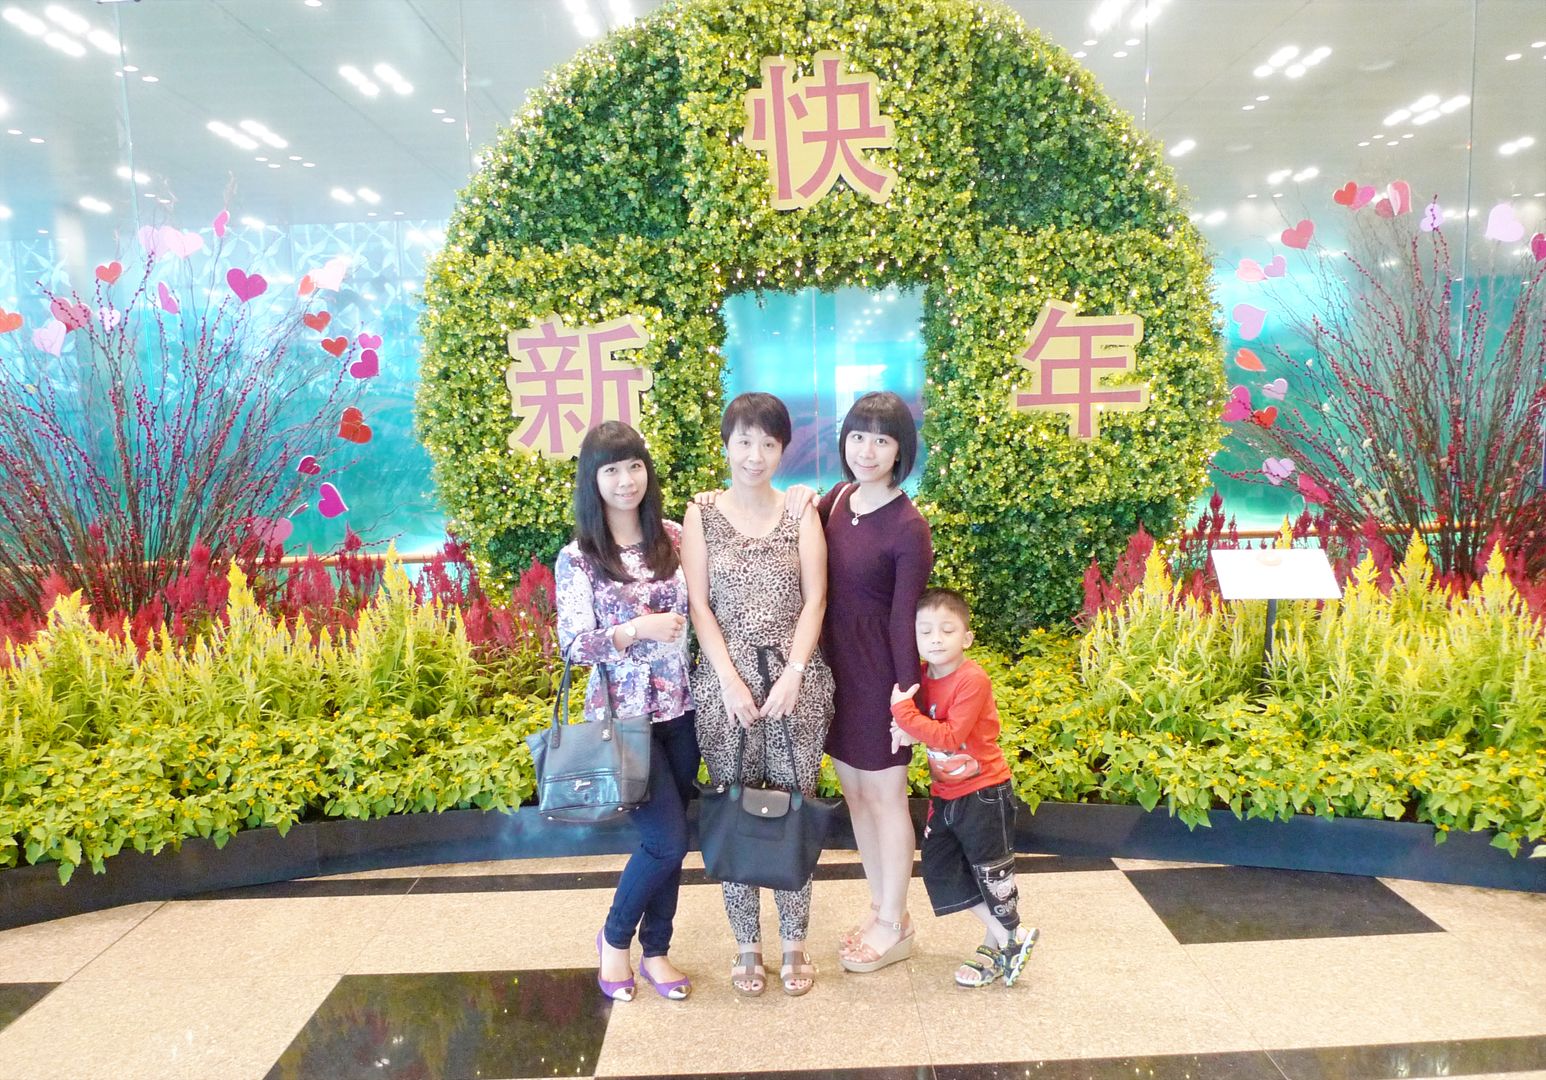  photo ChangiAirportCNY_zpsfa53bf16.jpg